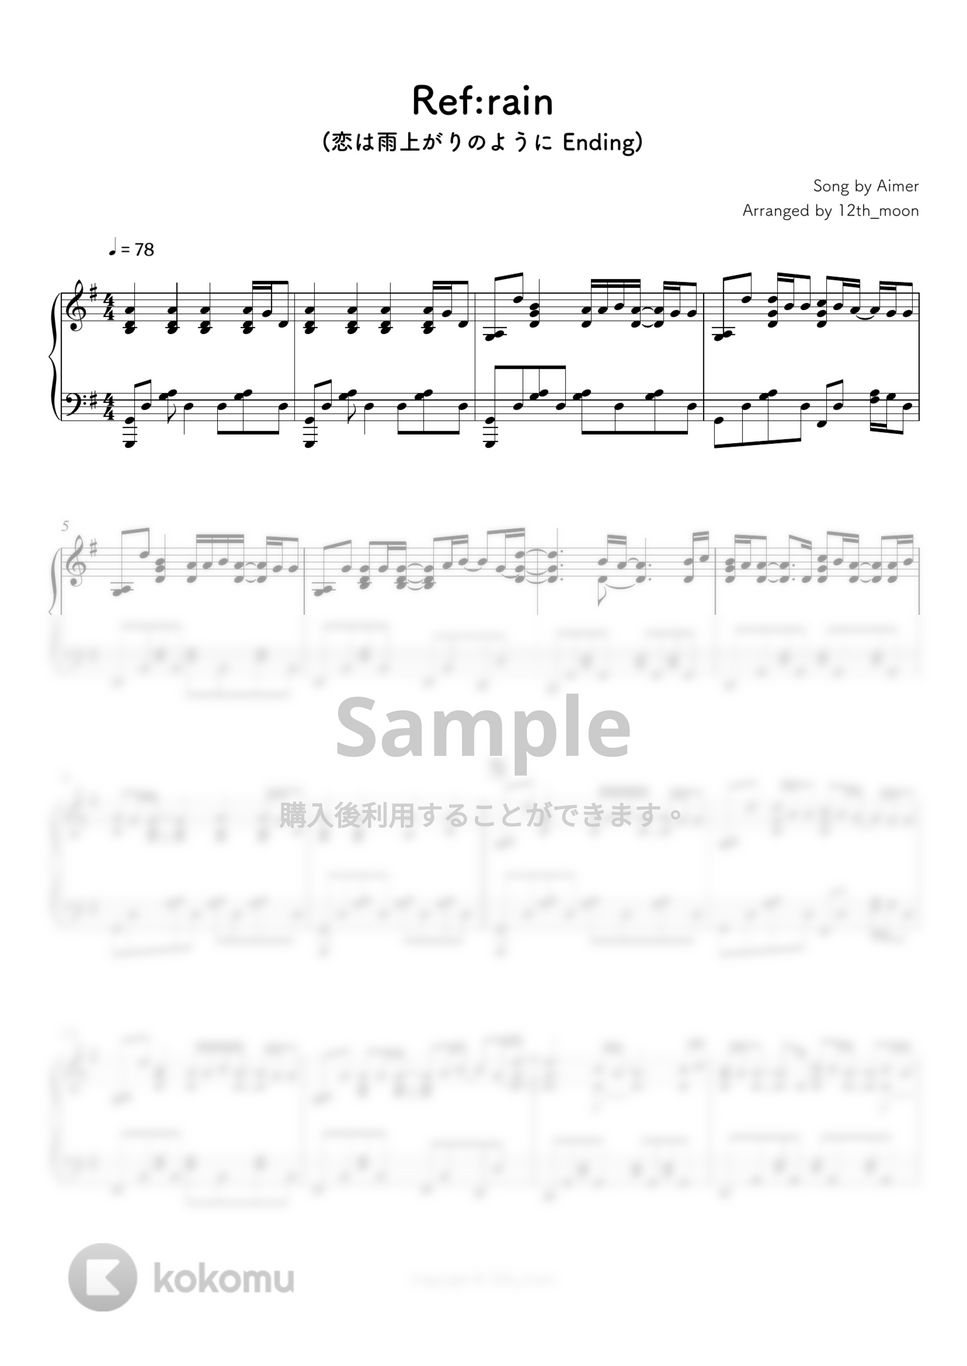 恋は雨上がりのように - Ref:rain by シビウォルピアノ